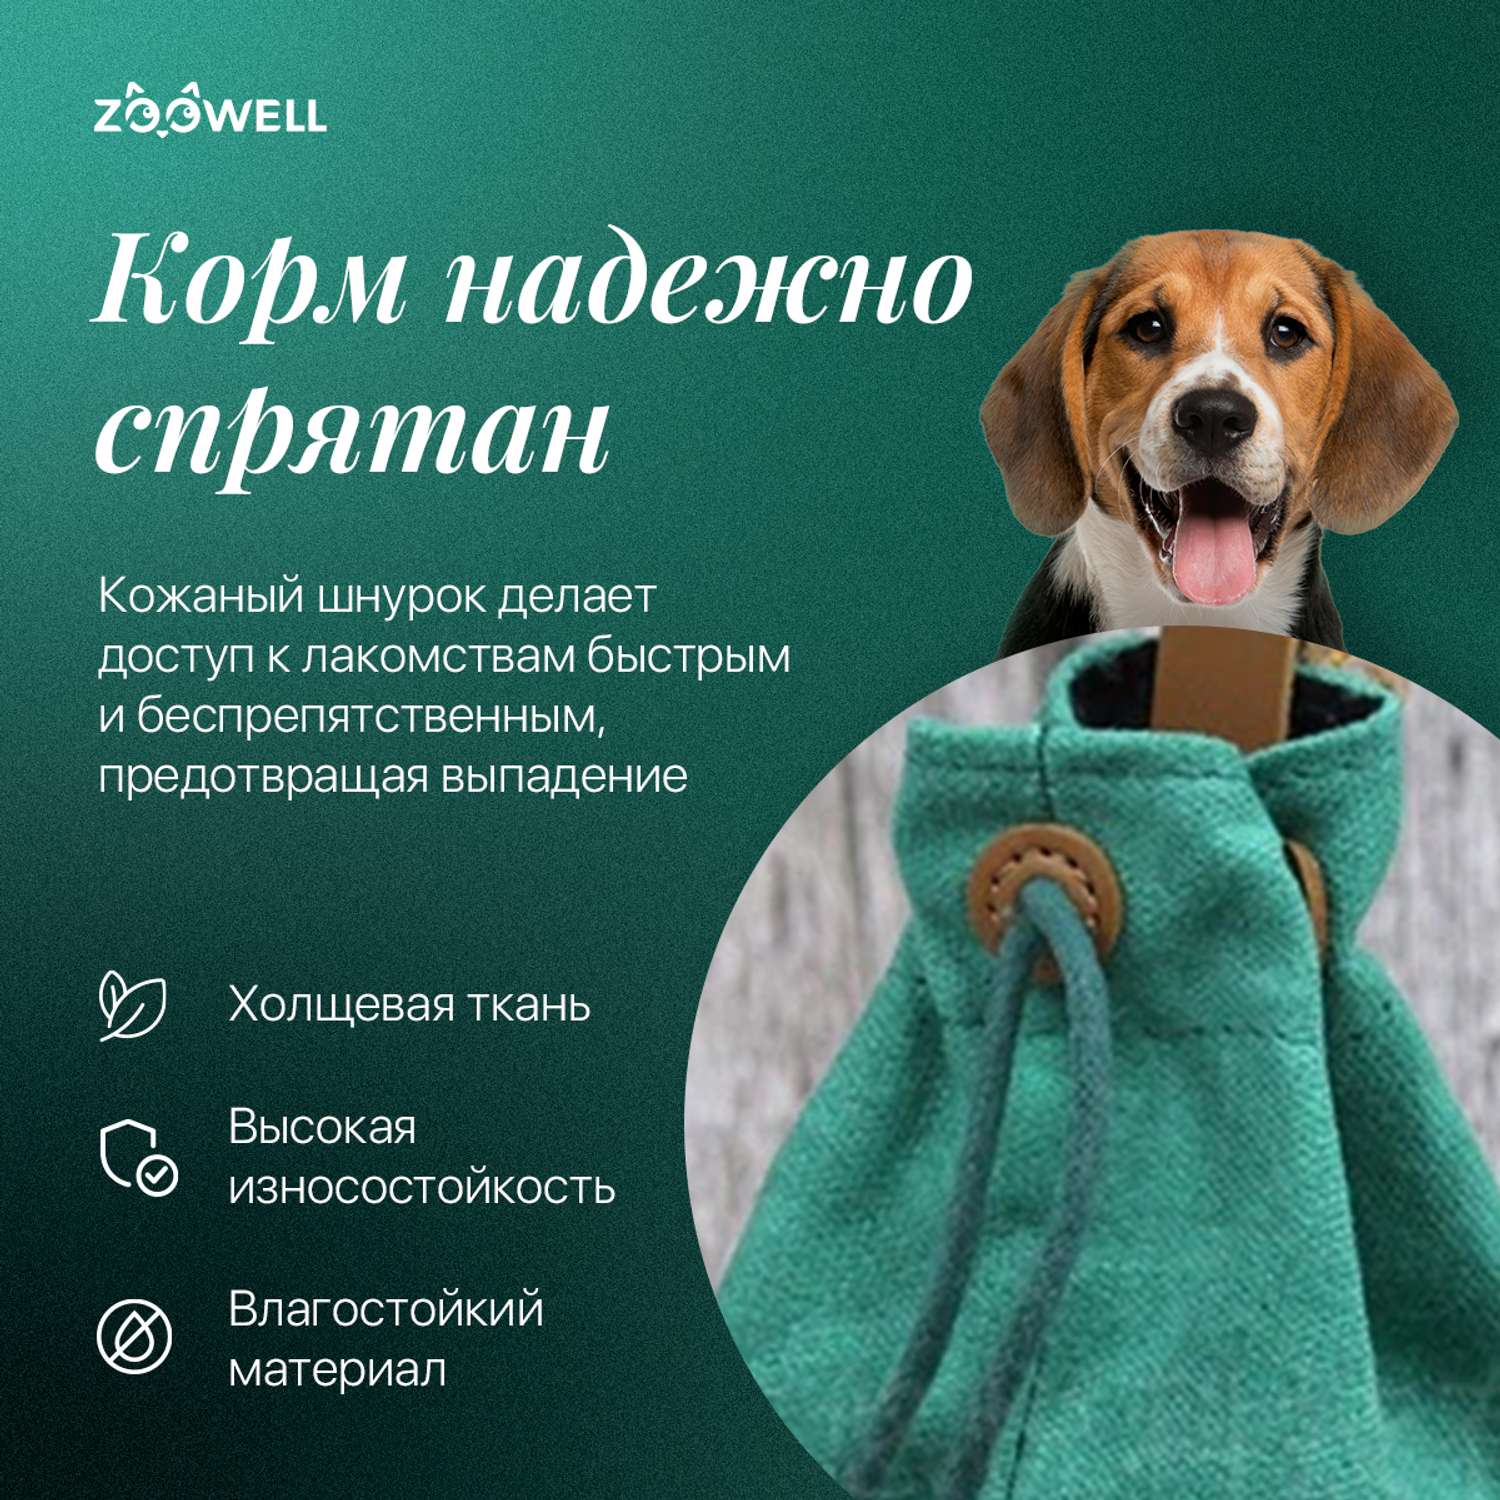 Сумка на пояс для лакомства ZDK ZooWell Training Premium поясная сумочка для корма и лакомств собак зеленая - фото 3